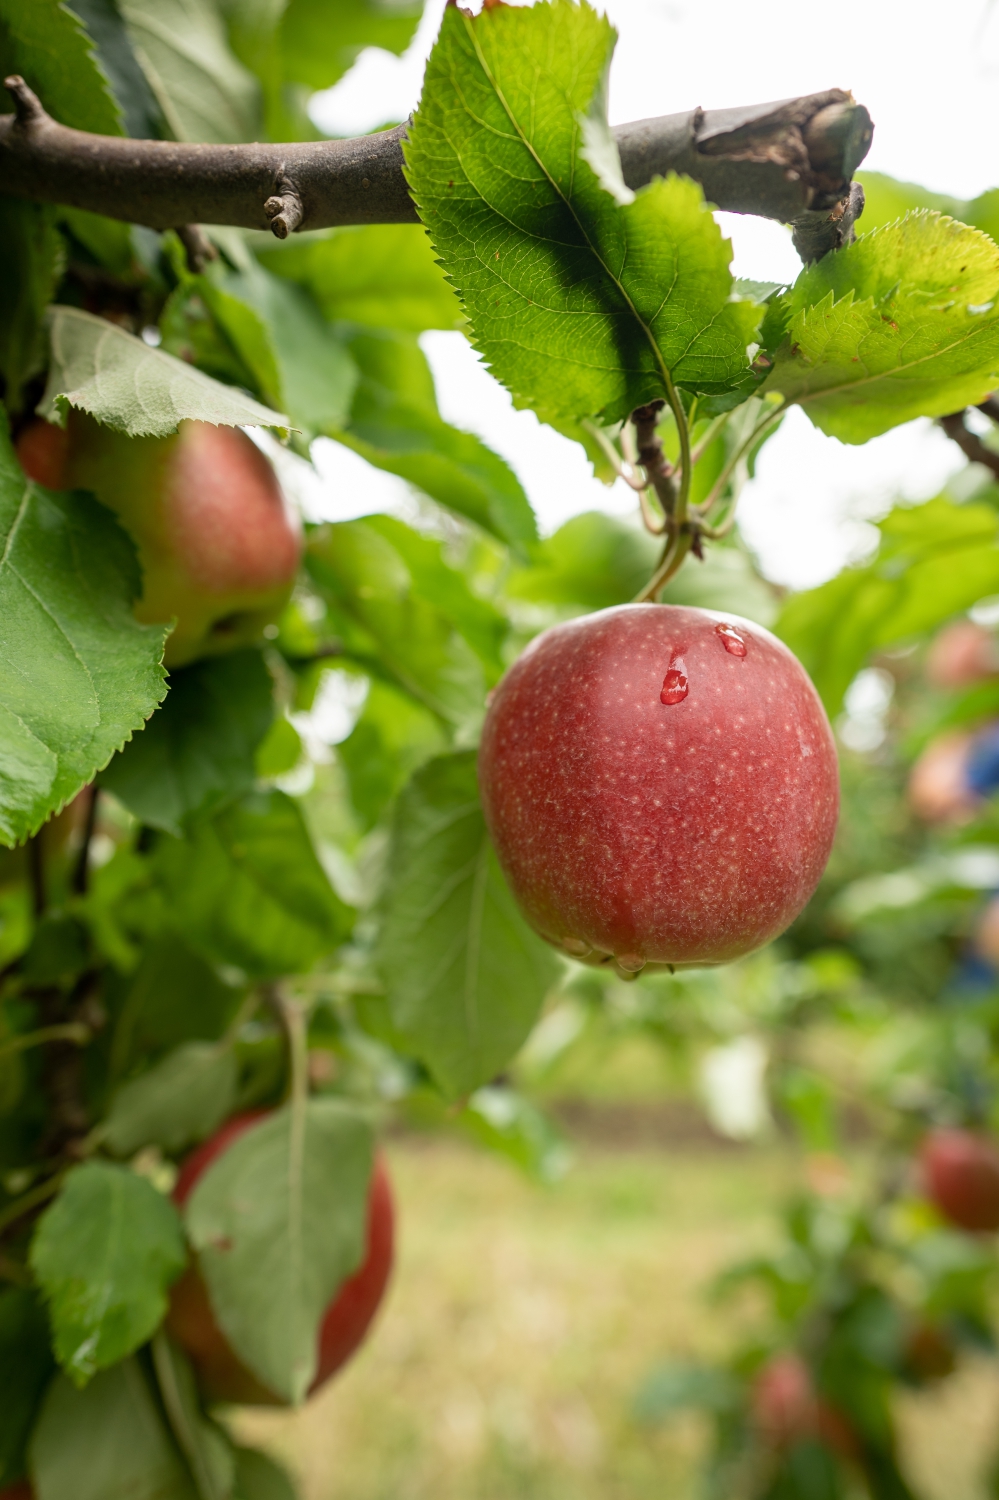 Biologischer Anbau von Äpfeln und Birnen unter Hagelnetzen - was sind die Besonderheiten?